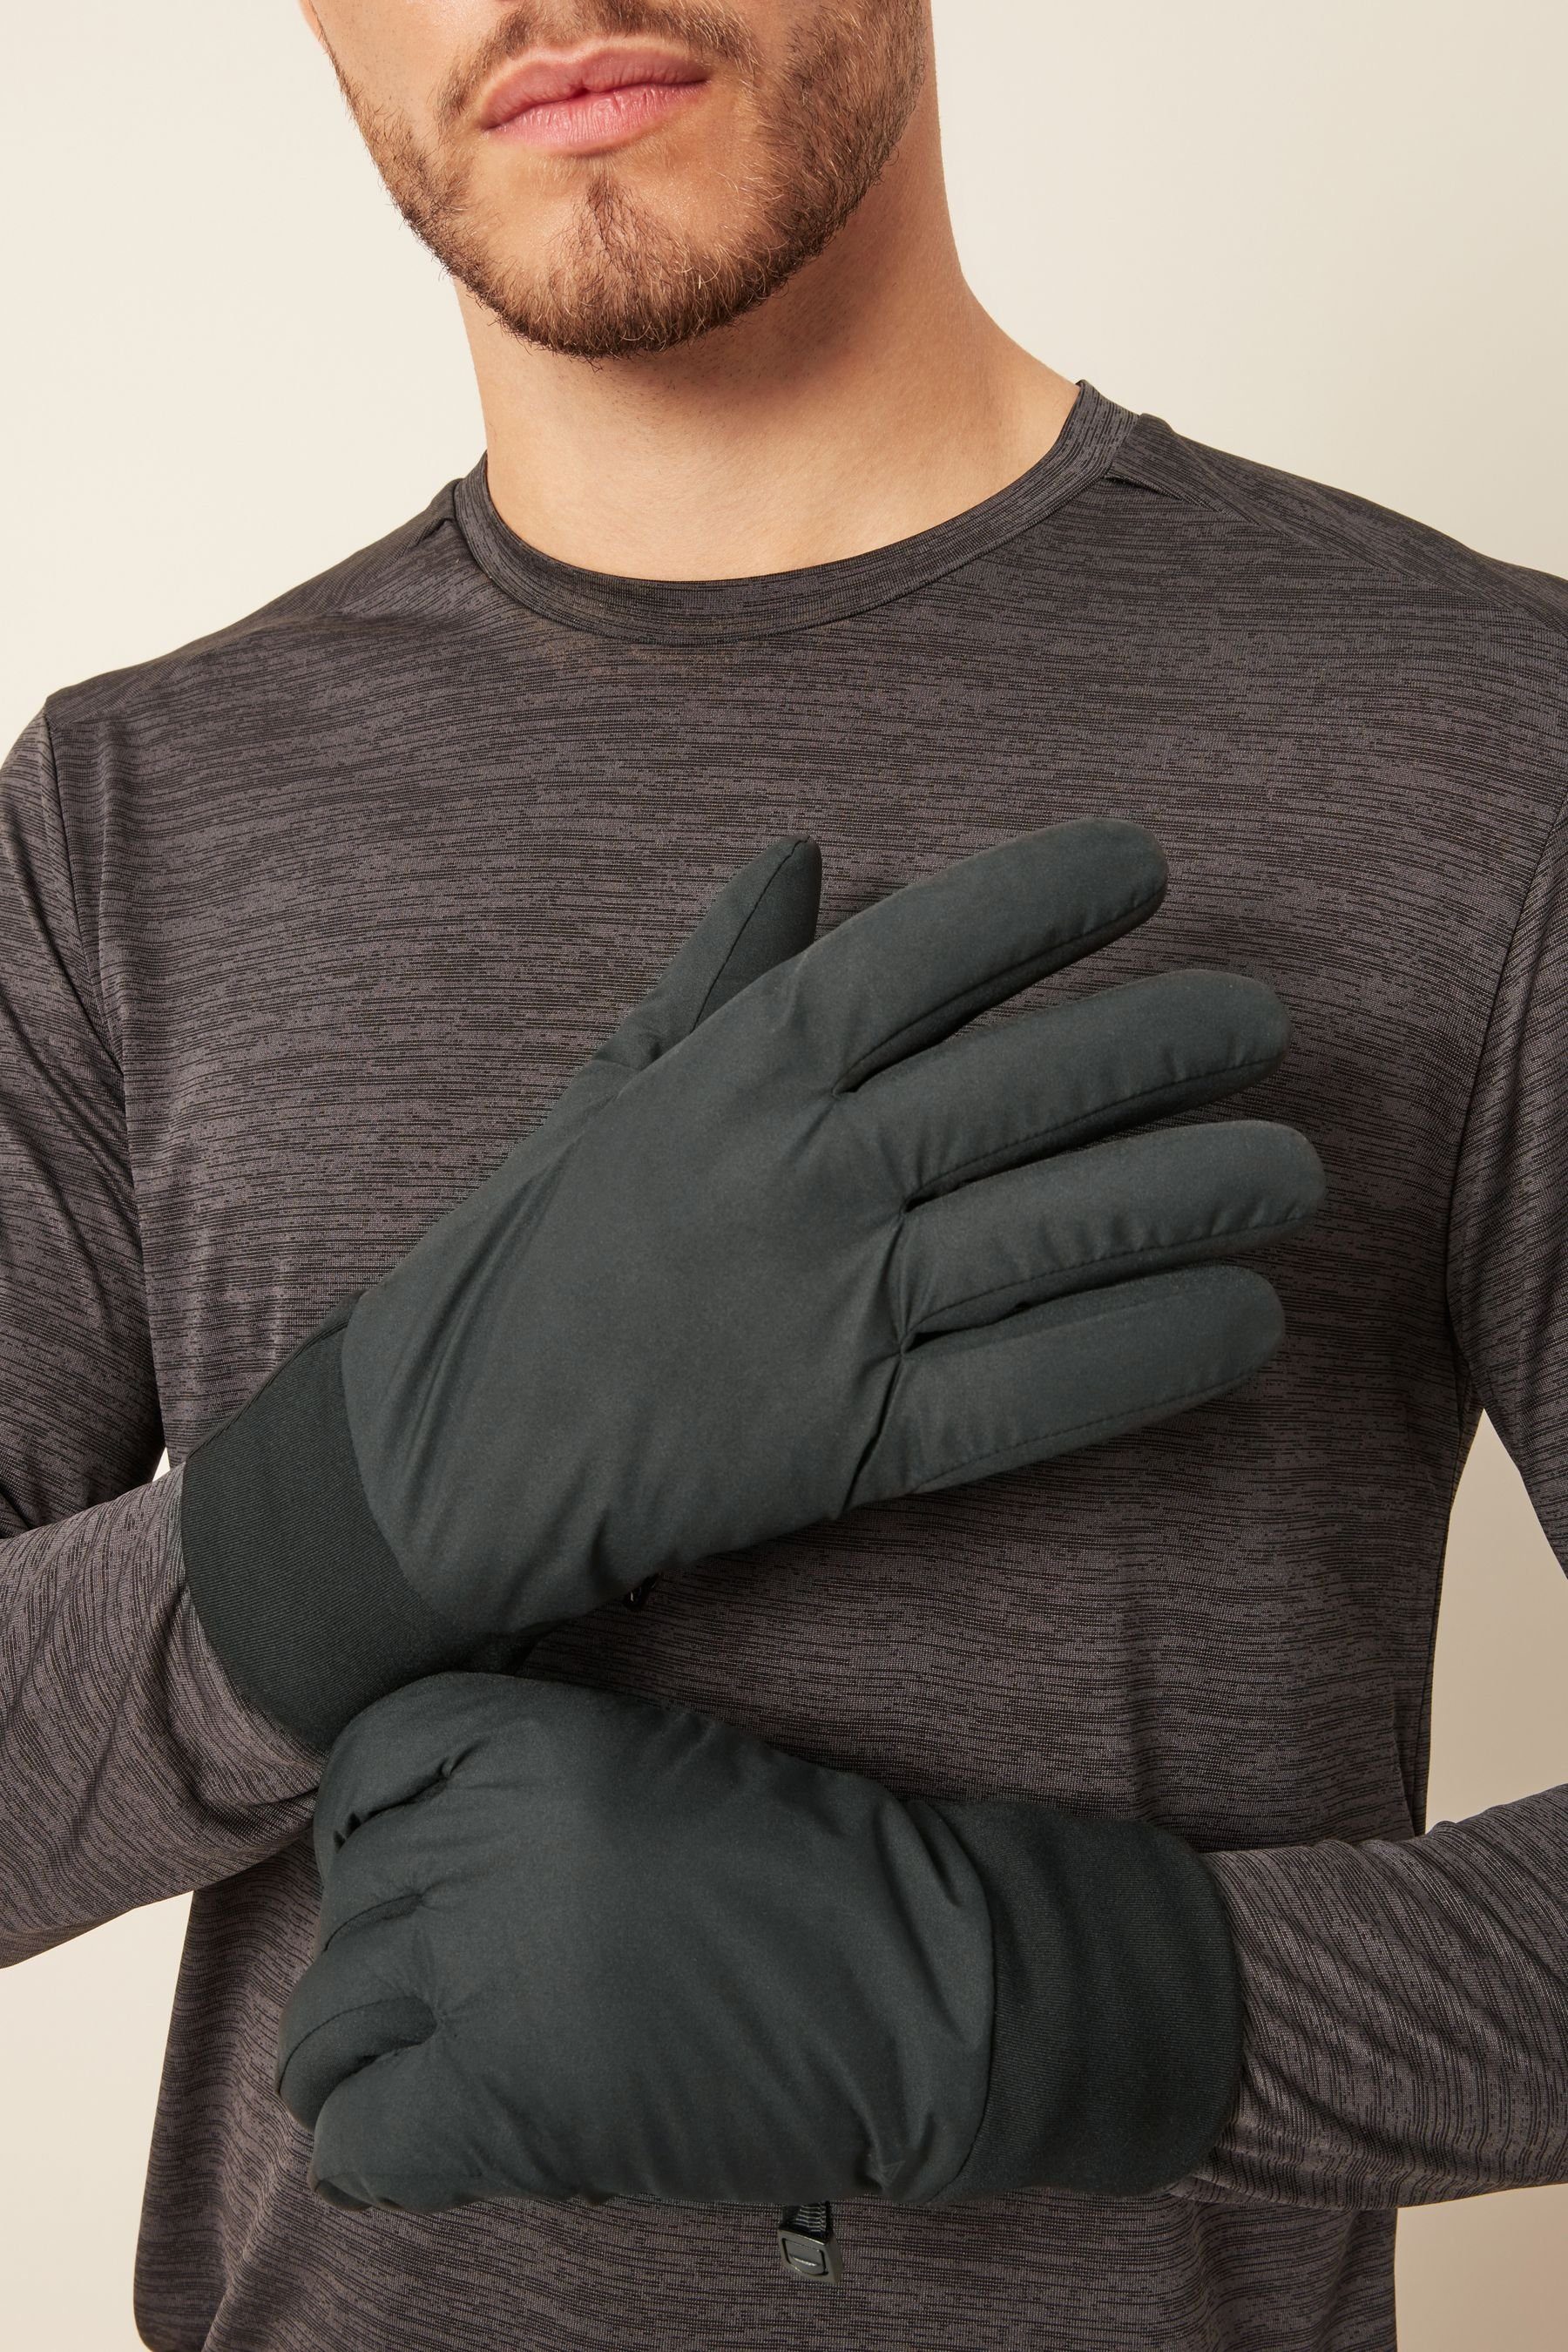 Next Strickhandschuhe Leichte Active Handschuhe